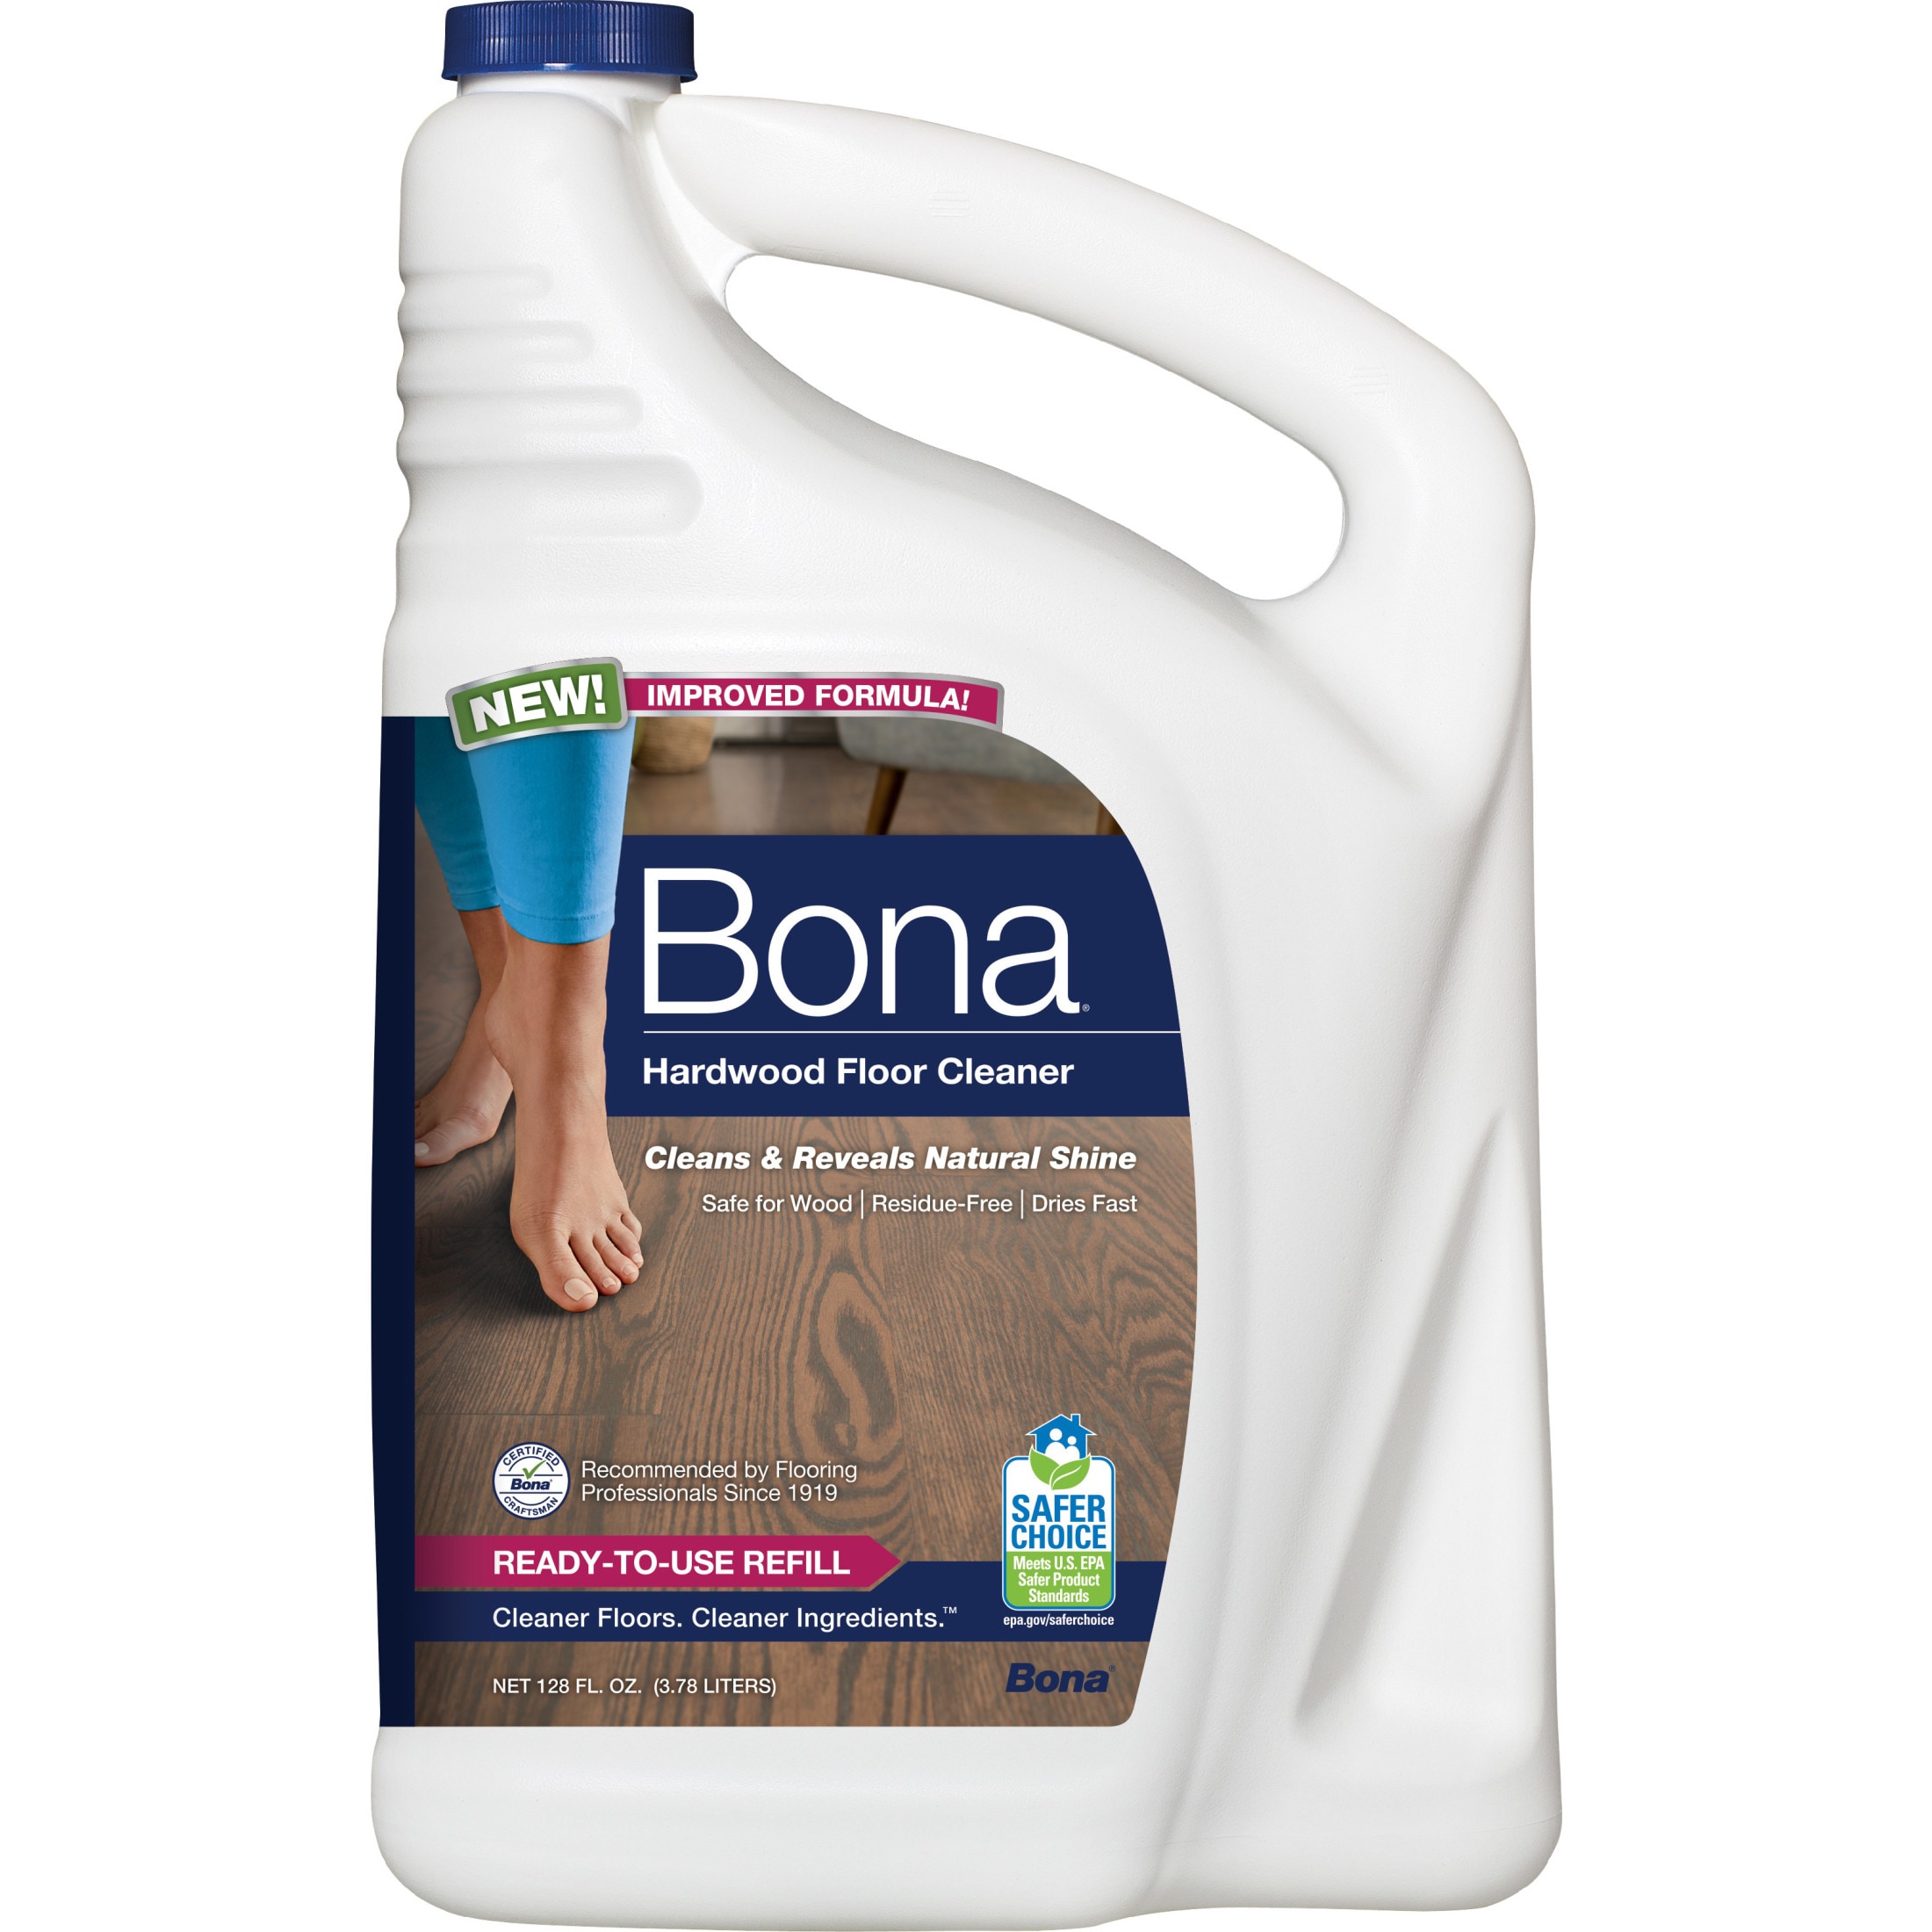 Bona Professional 128-fl oz Unscented Liquid Floor Cleaner in the